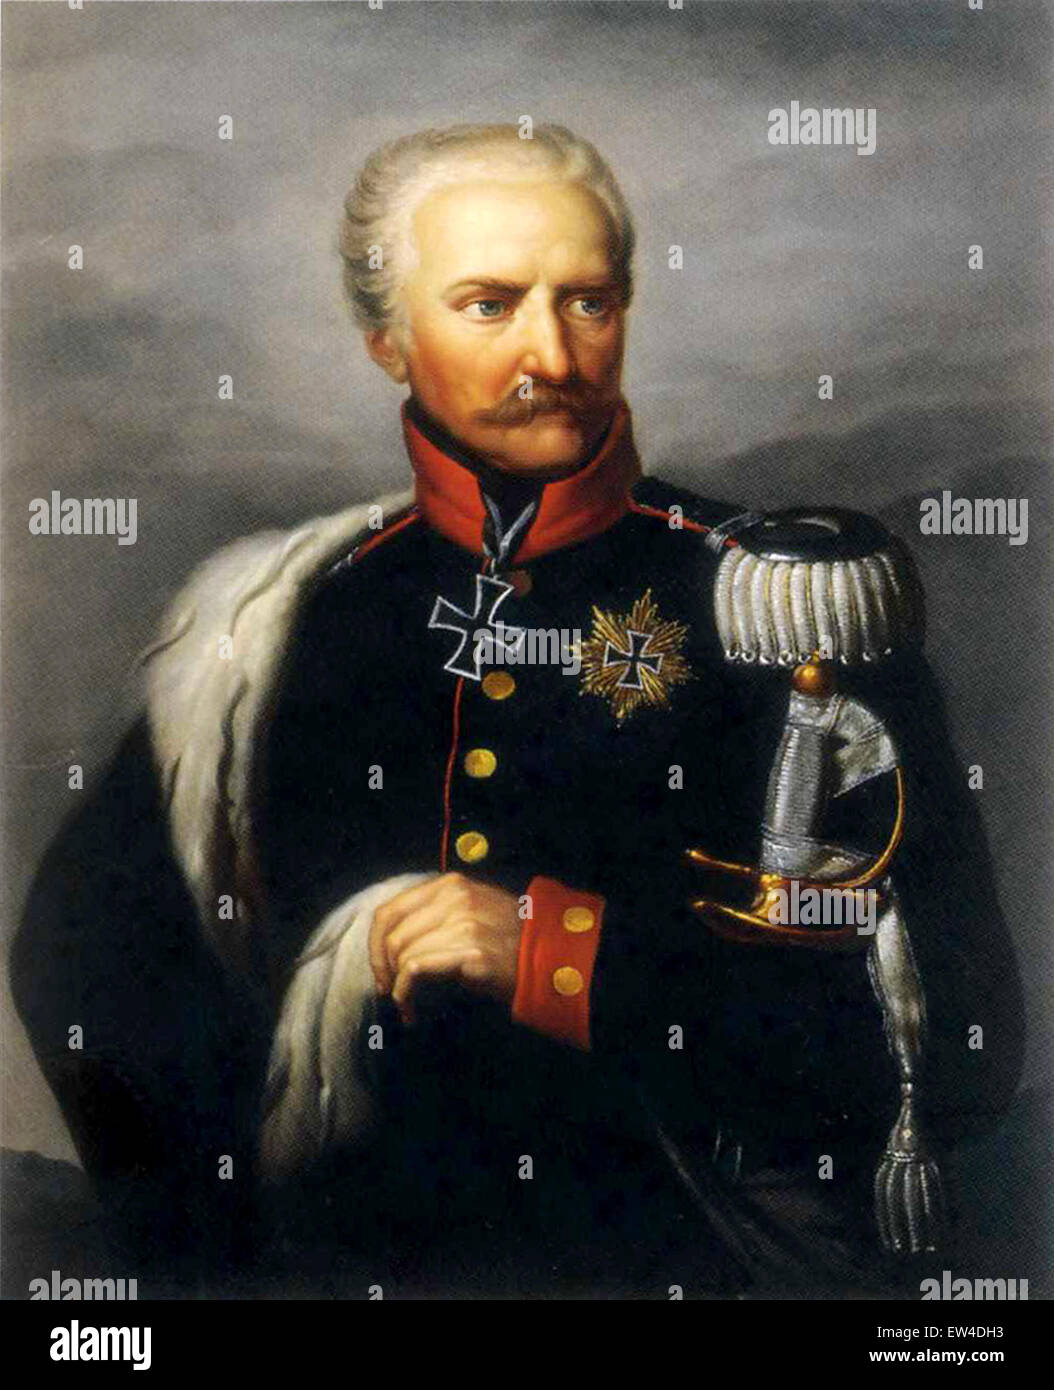 Gebhard Leberecht von Blücher, quien encabezó una coalición de los ejércitos de Napoleón derrota en la batalla de Leipzig, mandó al ejército prusiano Foto de stock